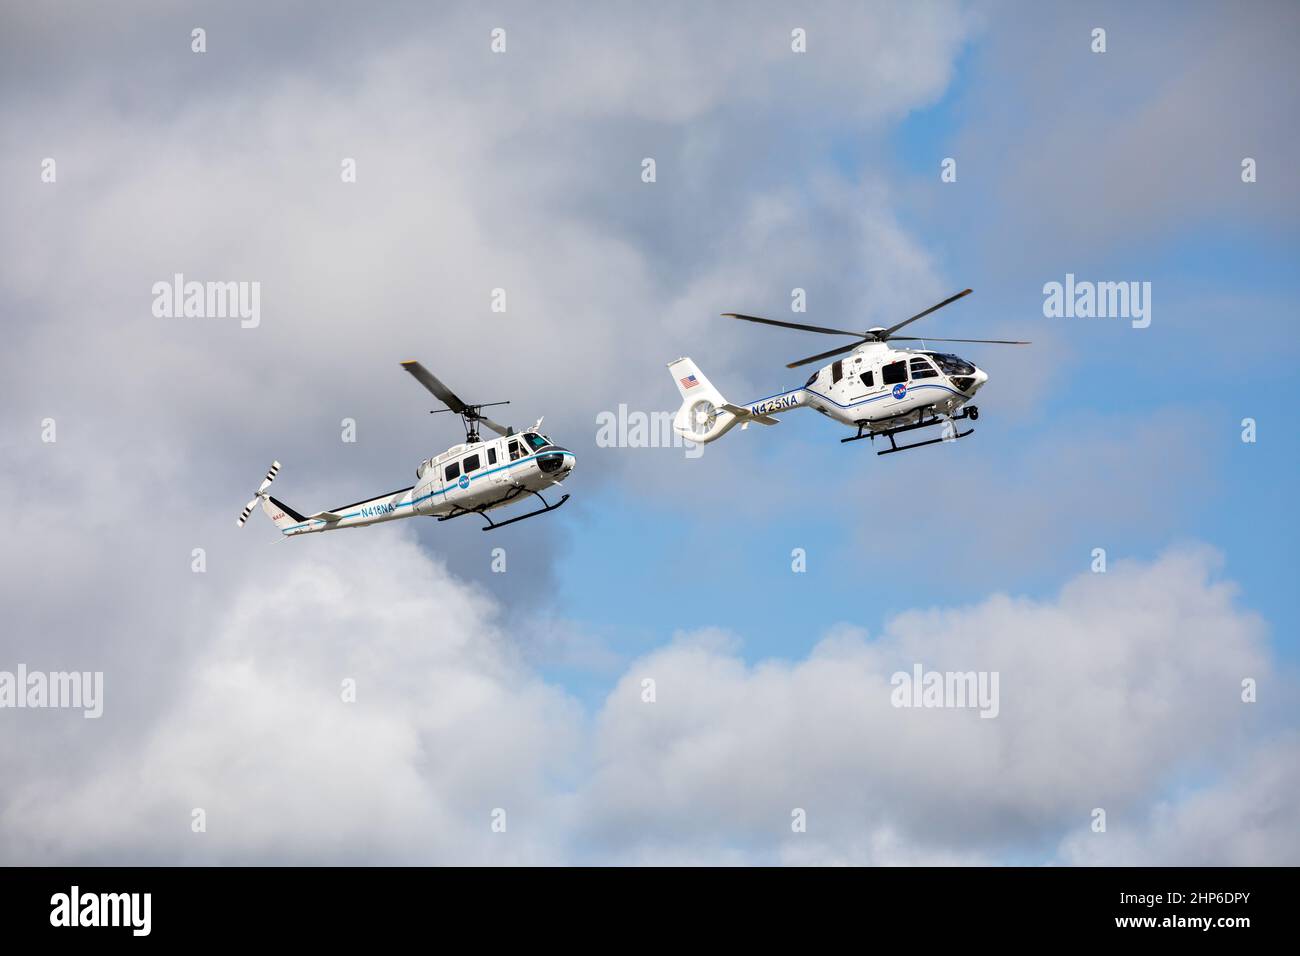 Les hélicoptères Bell Huey 2 (à gauche) et Airbus H135 utilisés pour les opérations de sécurité au Kennedy Space Center de la NASA en Floride effectuent un vol ensemble le 27 octobre 2020, avant que les Hueys ne soient retirés de leur service. L’Airbus H135s remplace les trois avions Bell Huey 2 entretenus par l’équipe des opérations de vol de Kennedy. Kennedy a reçu deux des H135 avions le 30 septembre, et le troisième devrait arriver au printemps 2021. Banque D'Images